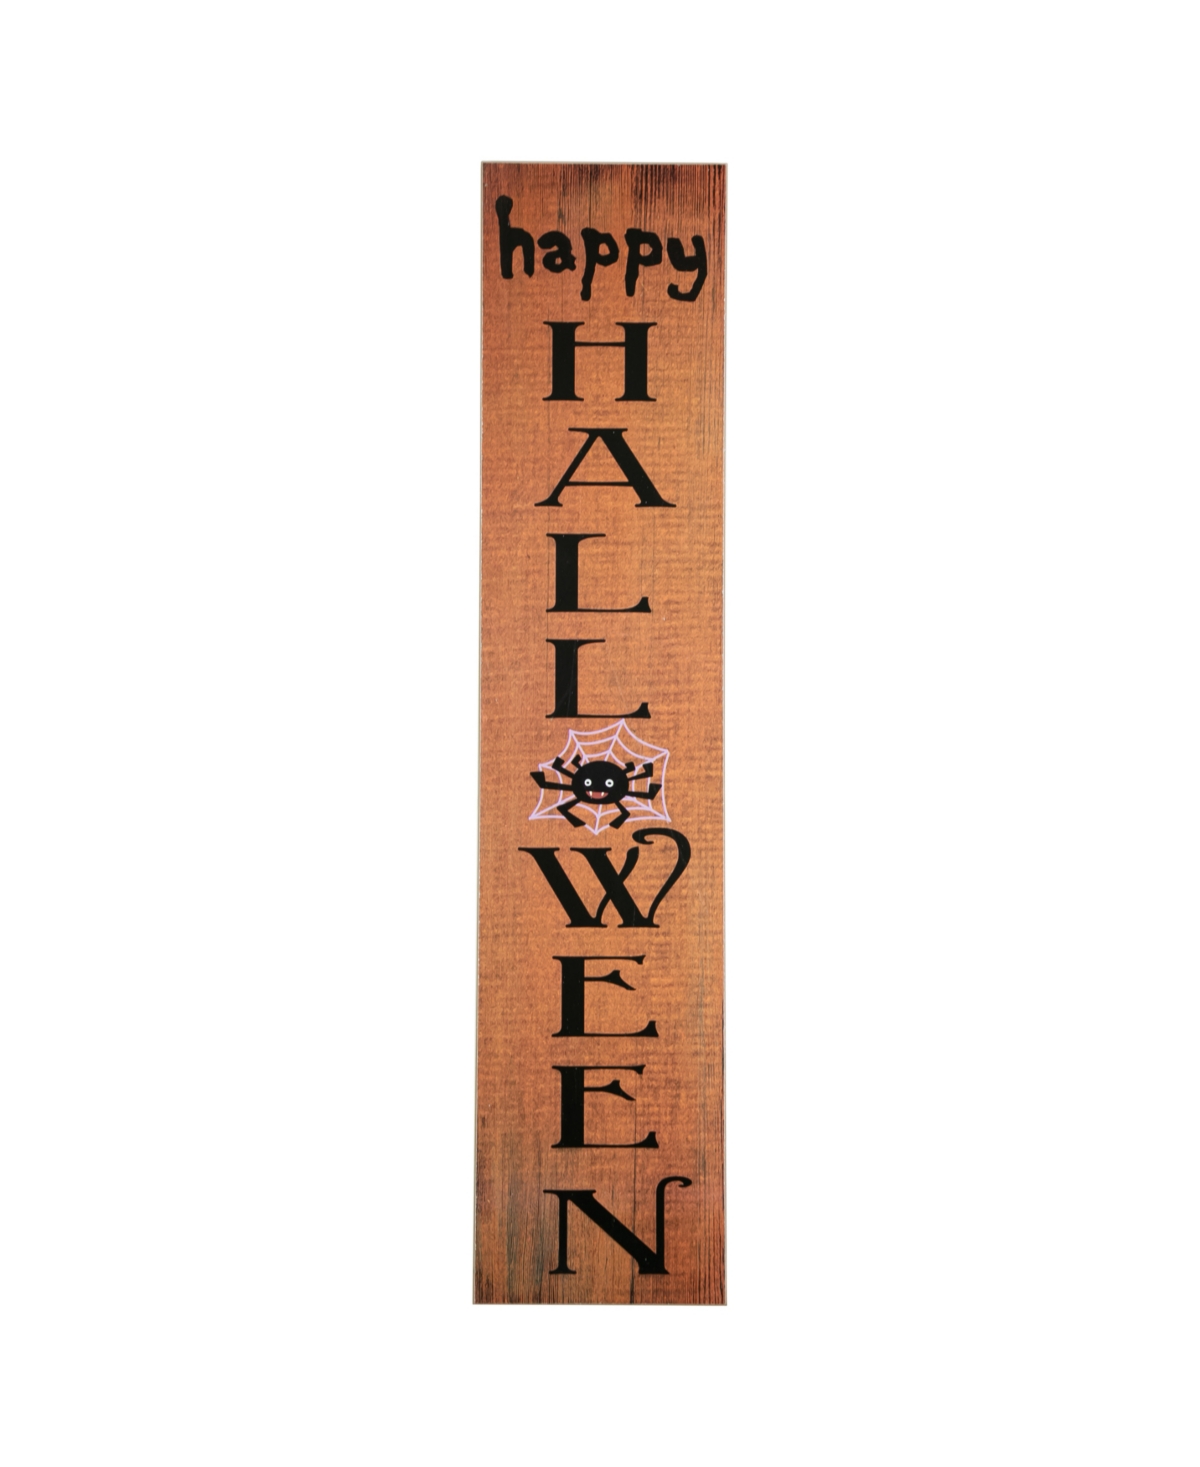 36" Orange Happy Halloween with Spider Wooden Porch Board Sign Decoration - Orange